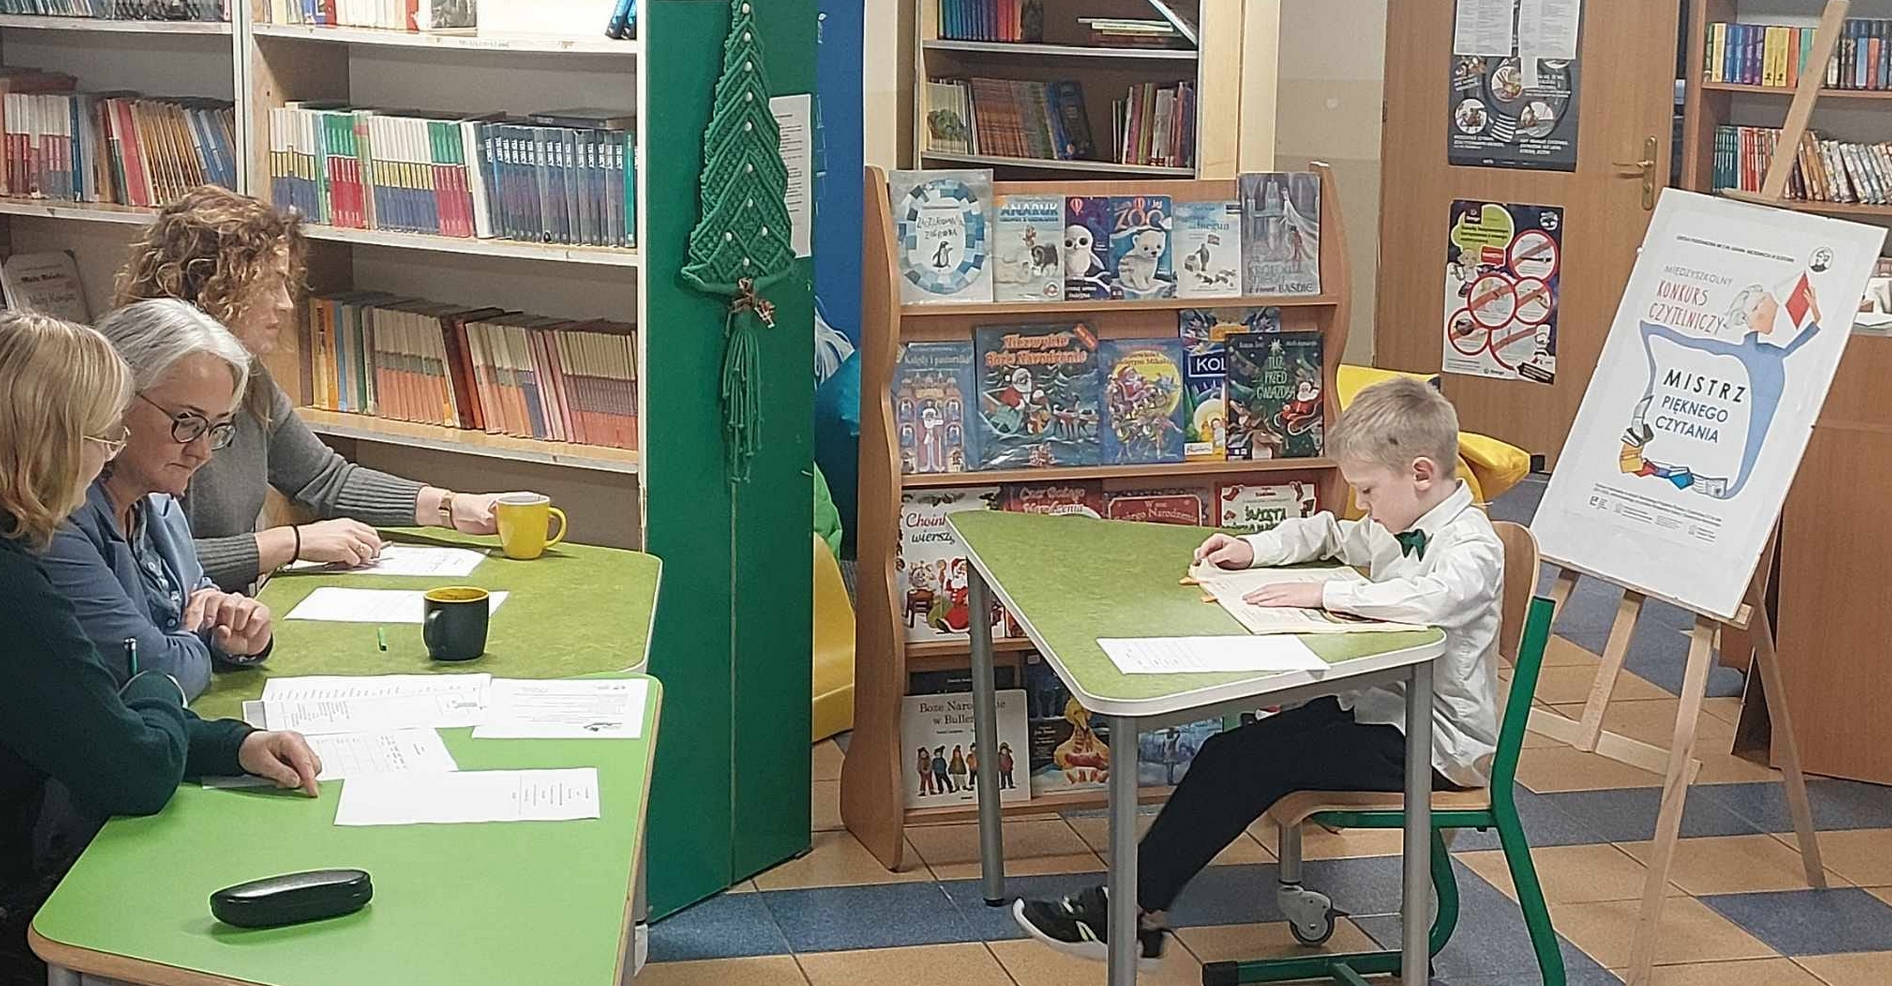 Uczeń siedzi i czyta książkę w bibliotece. W tle napis mistrz pięknego czytania